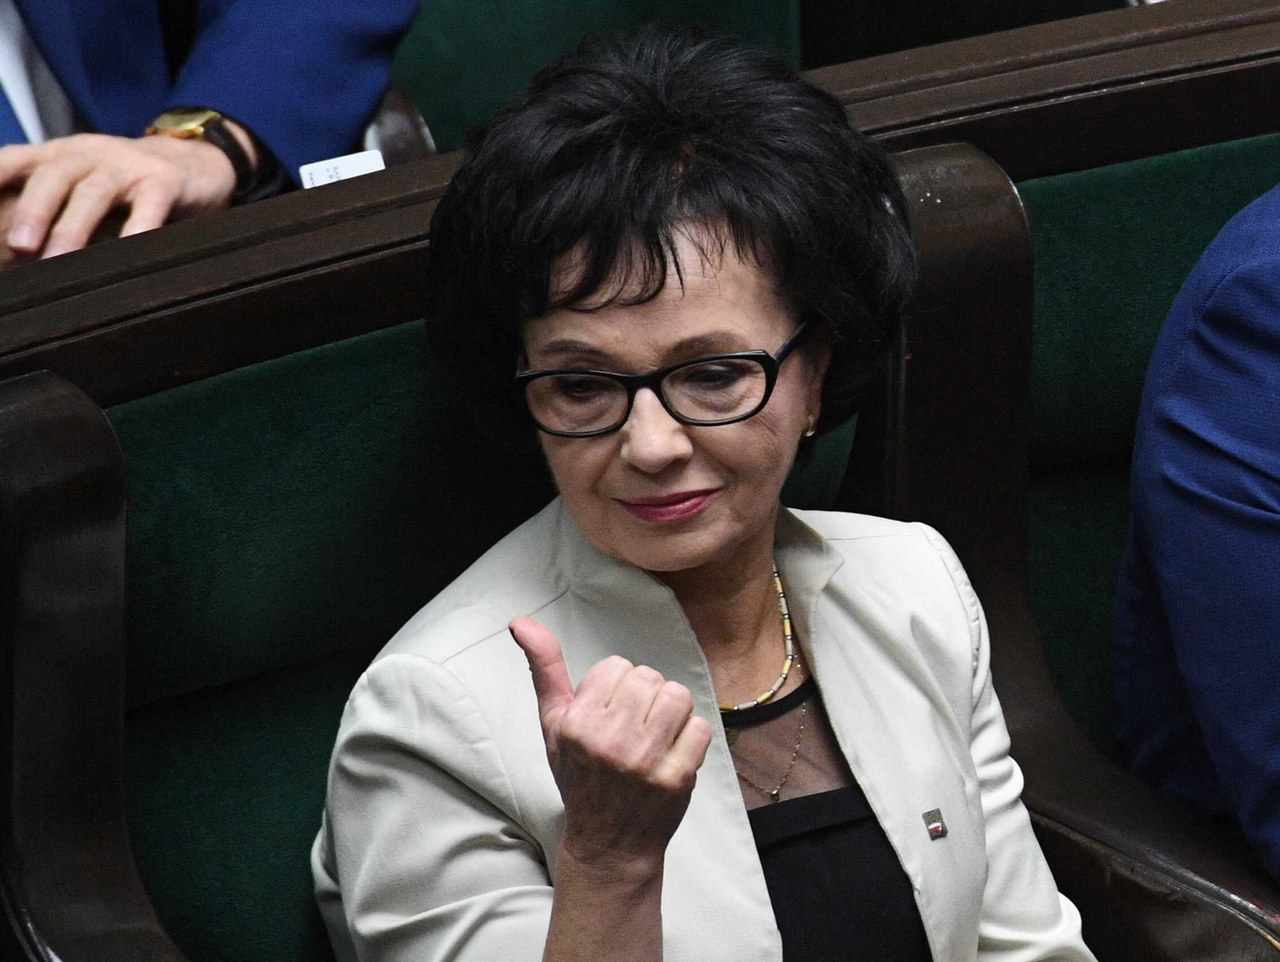 Zaskoczenia nie było. Elżbieta Witek wybrana na marszałka Sejmu